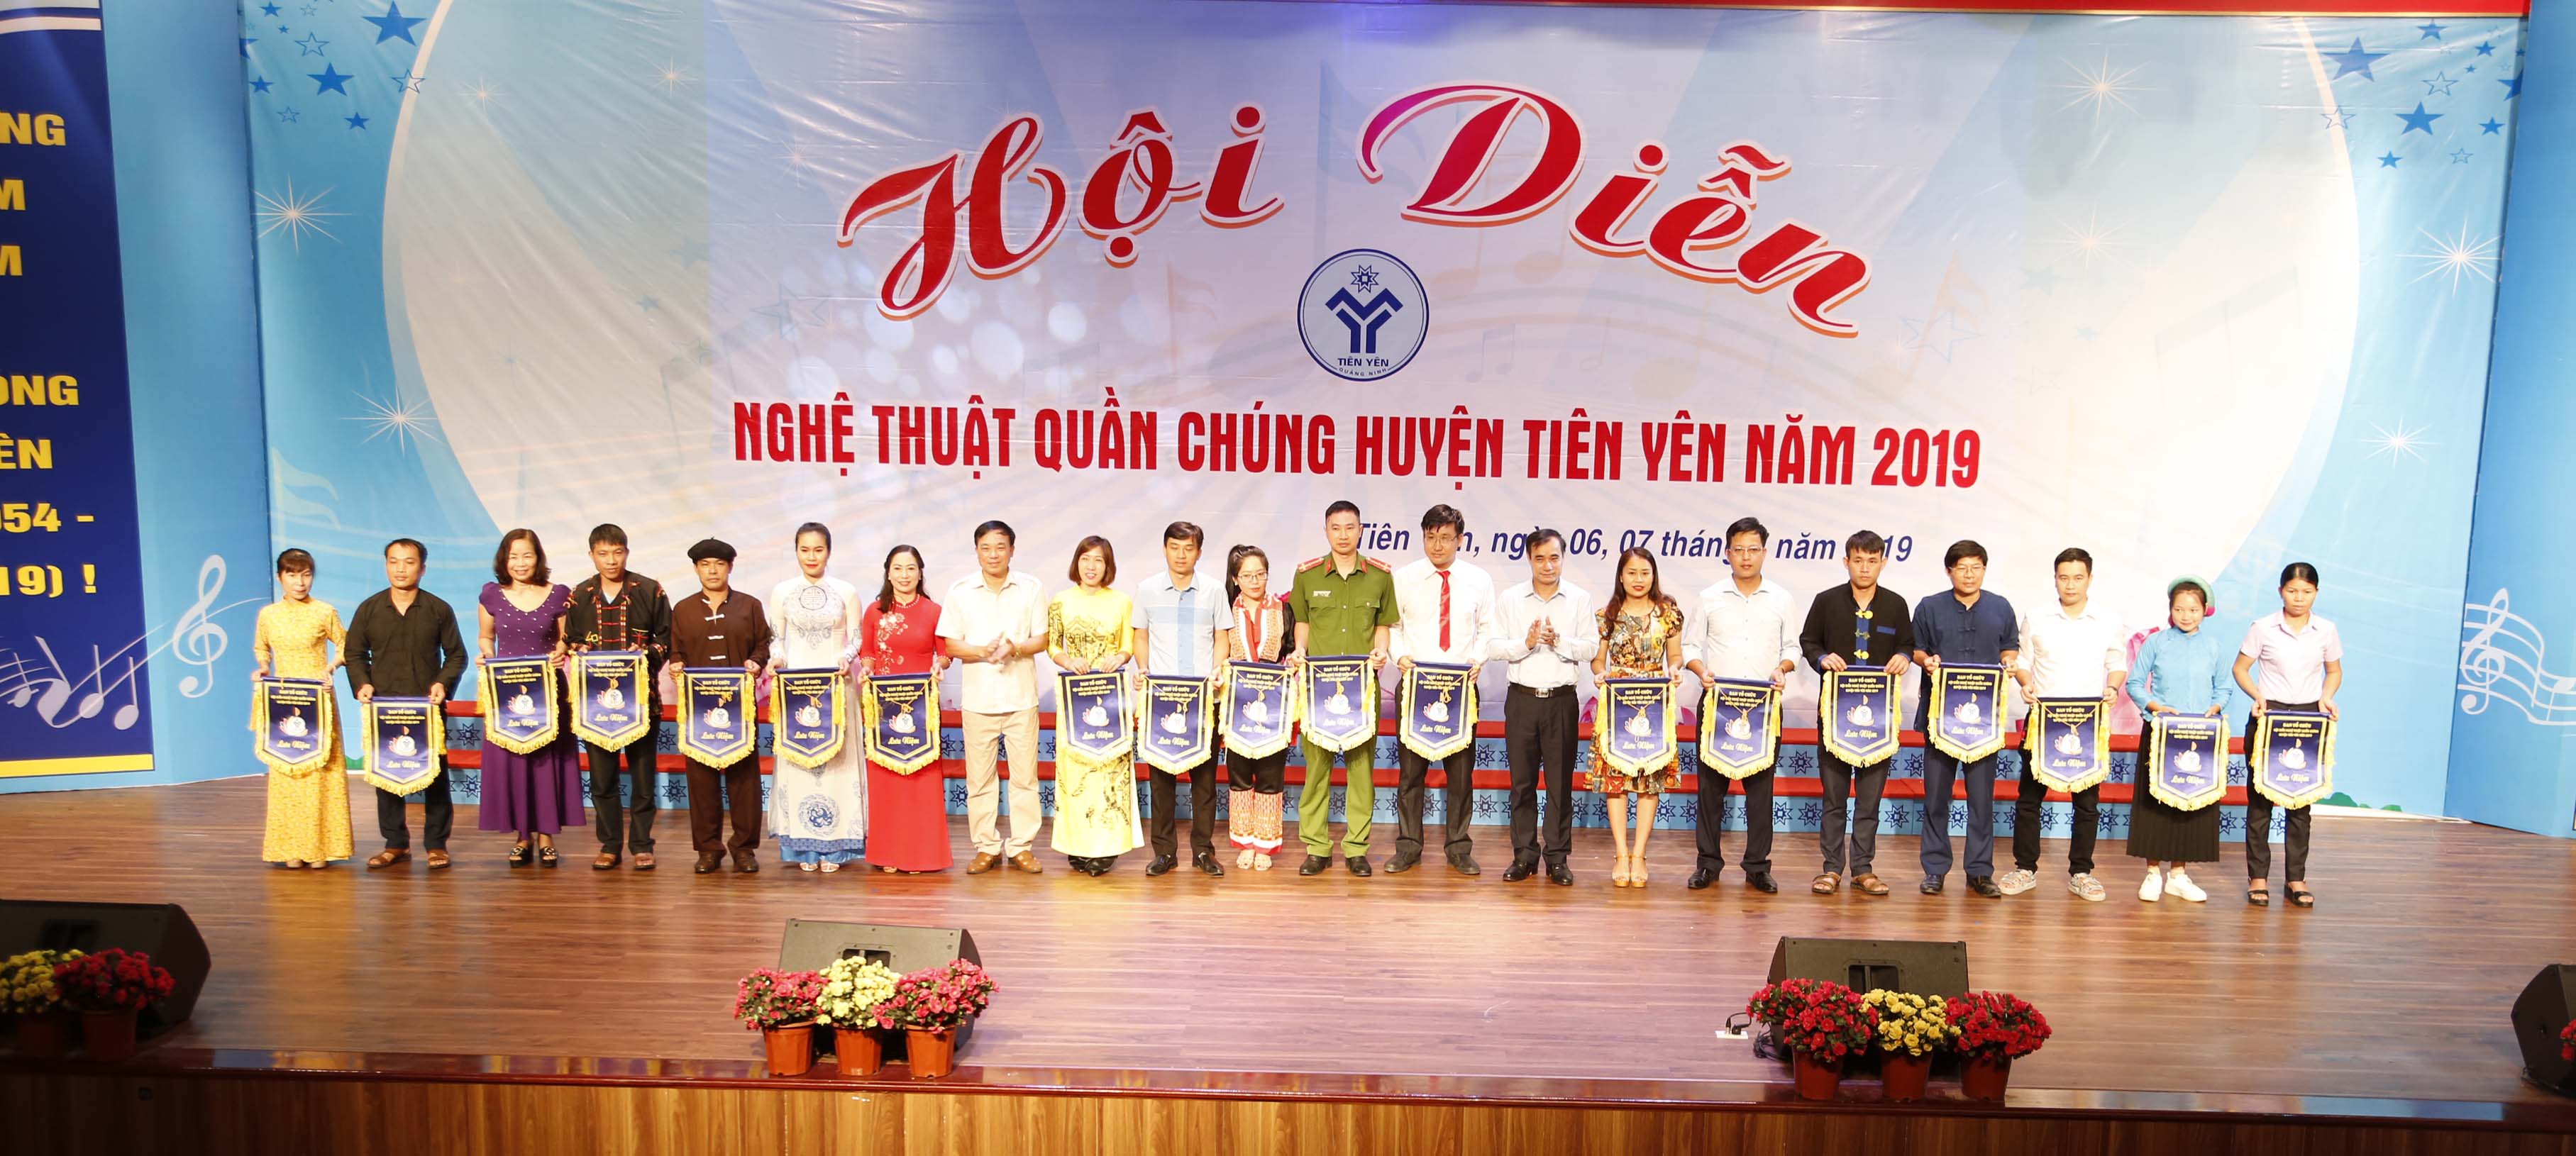 Ban tổ chức tặng cờ lưu niệm cho các đơn vị tham gia Hội diễn nghệ thuật quần chúng huyện Tiên Yên năm 2019.